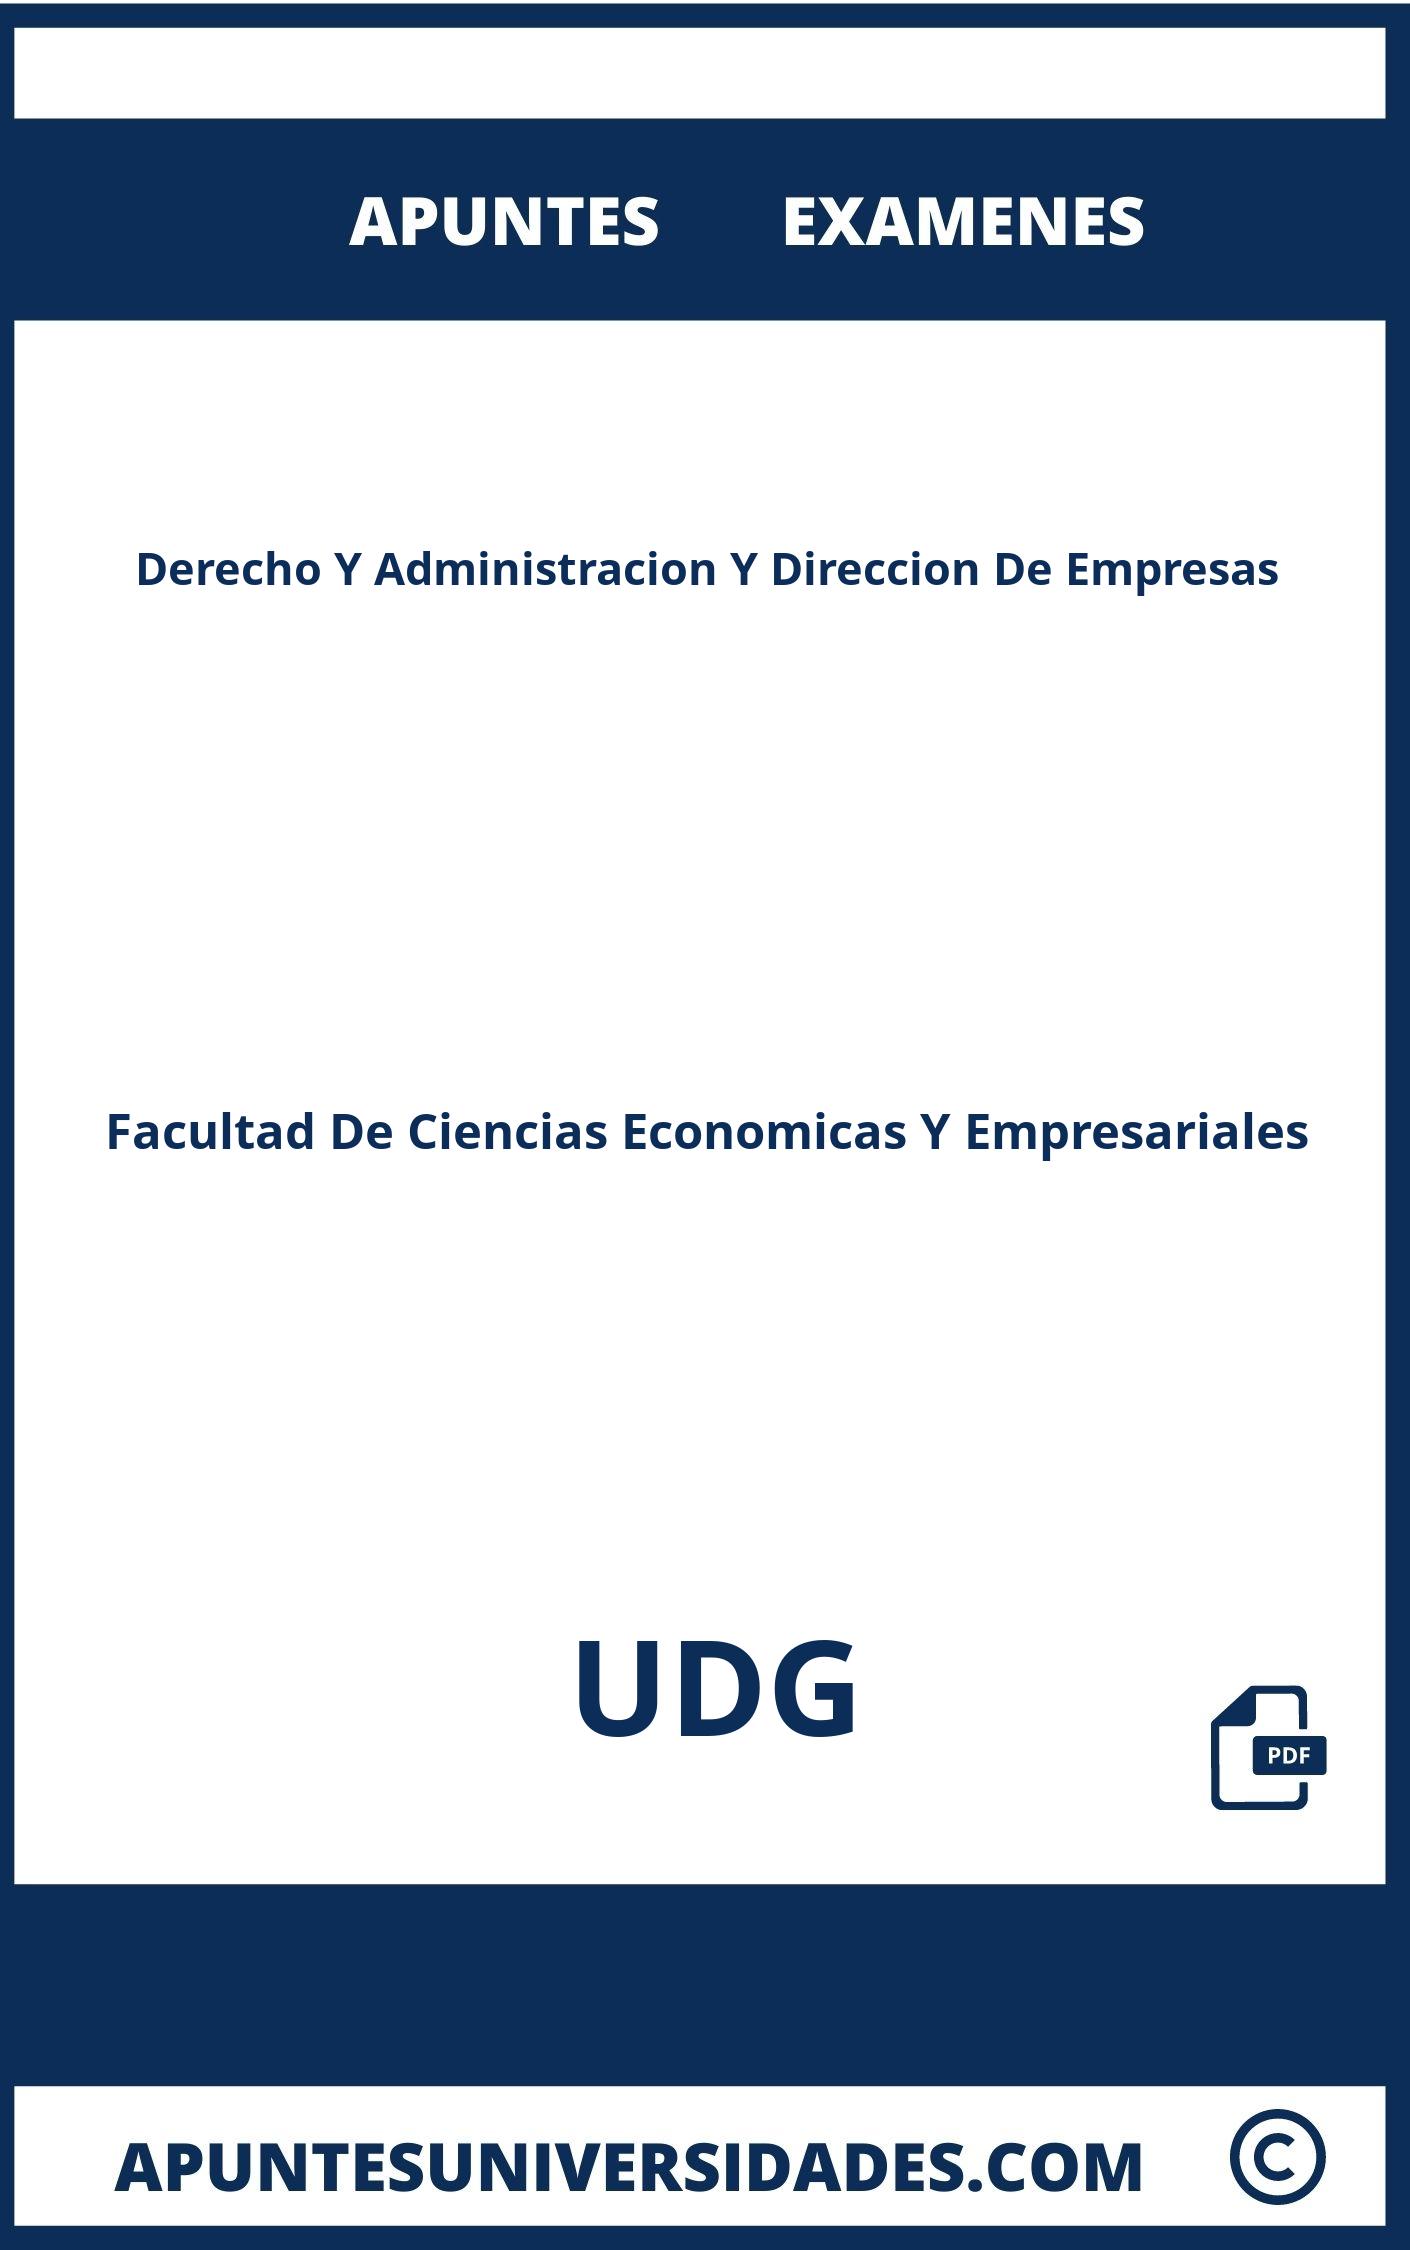 Derecho Y Administracion Y Direccion De Empresas UDG Apuntes Examenes